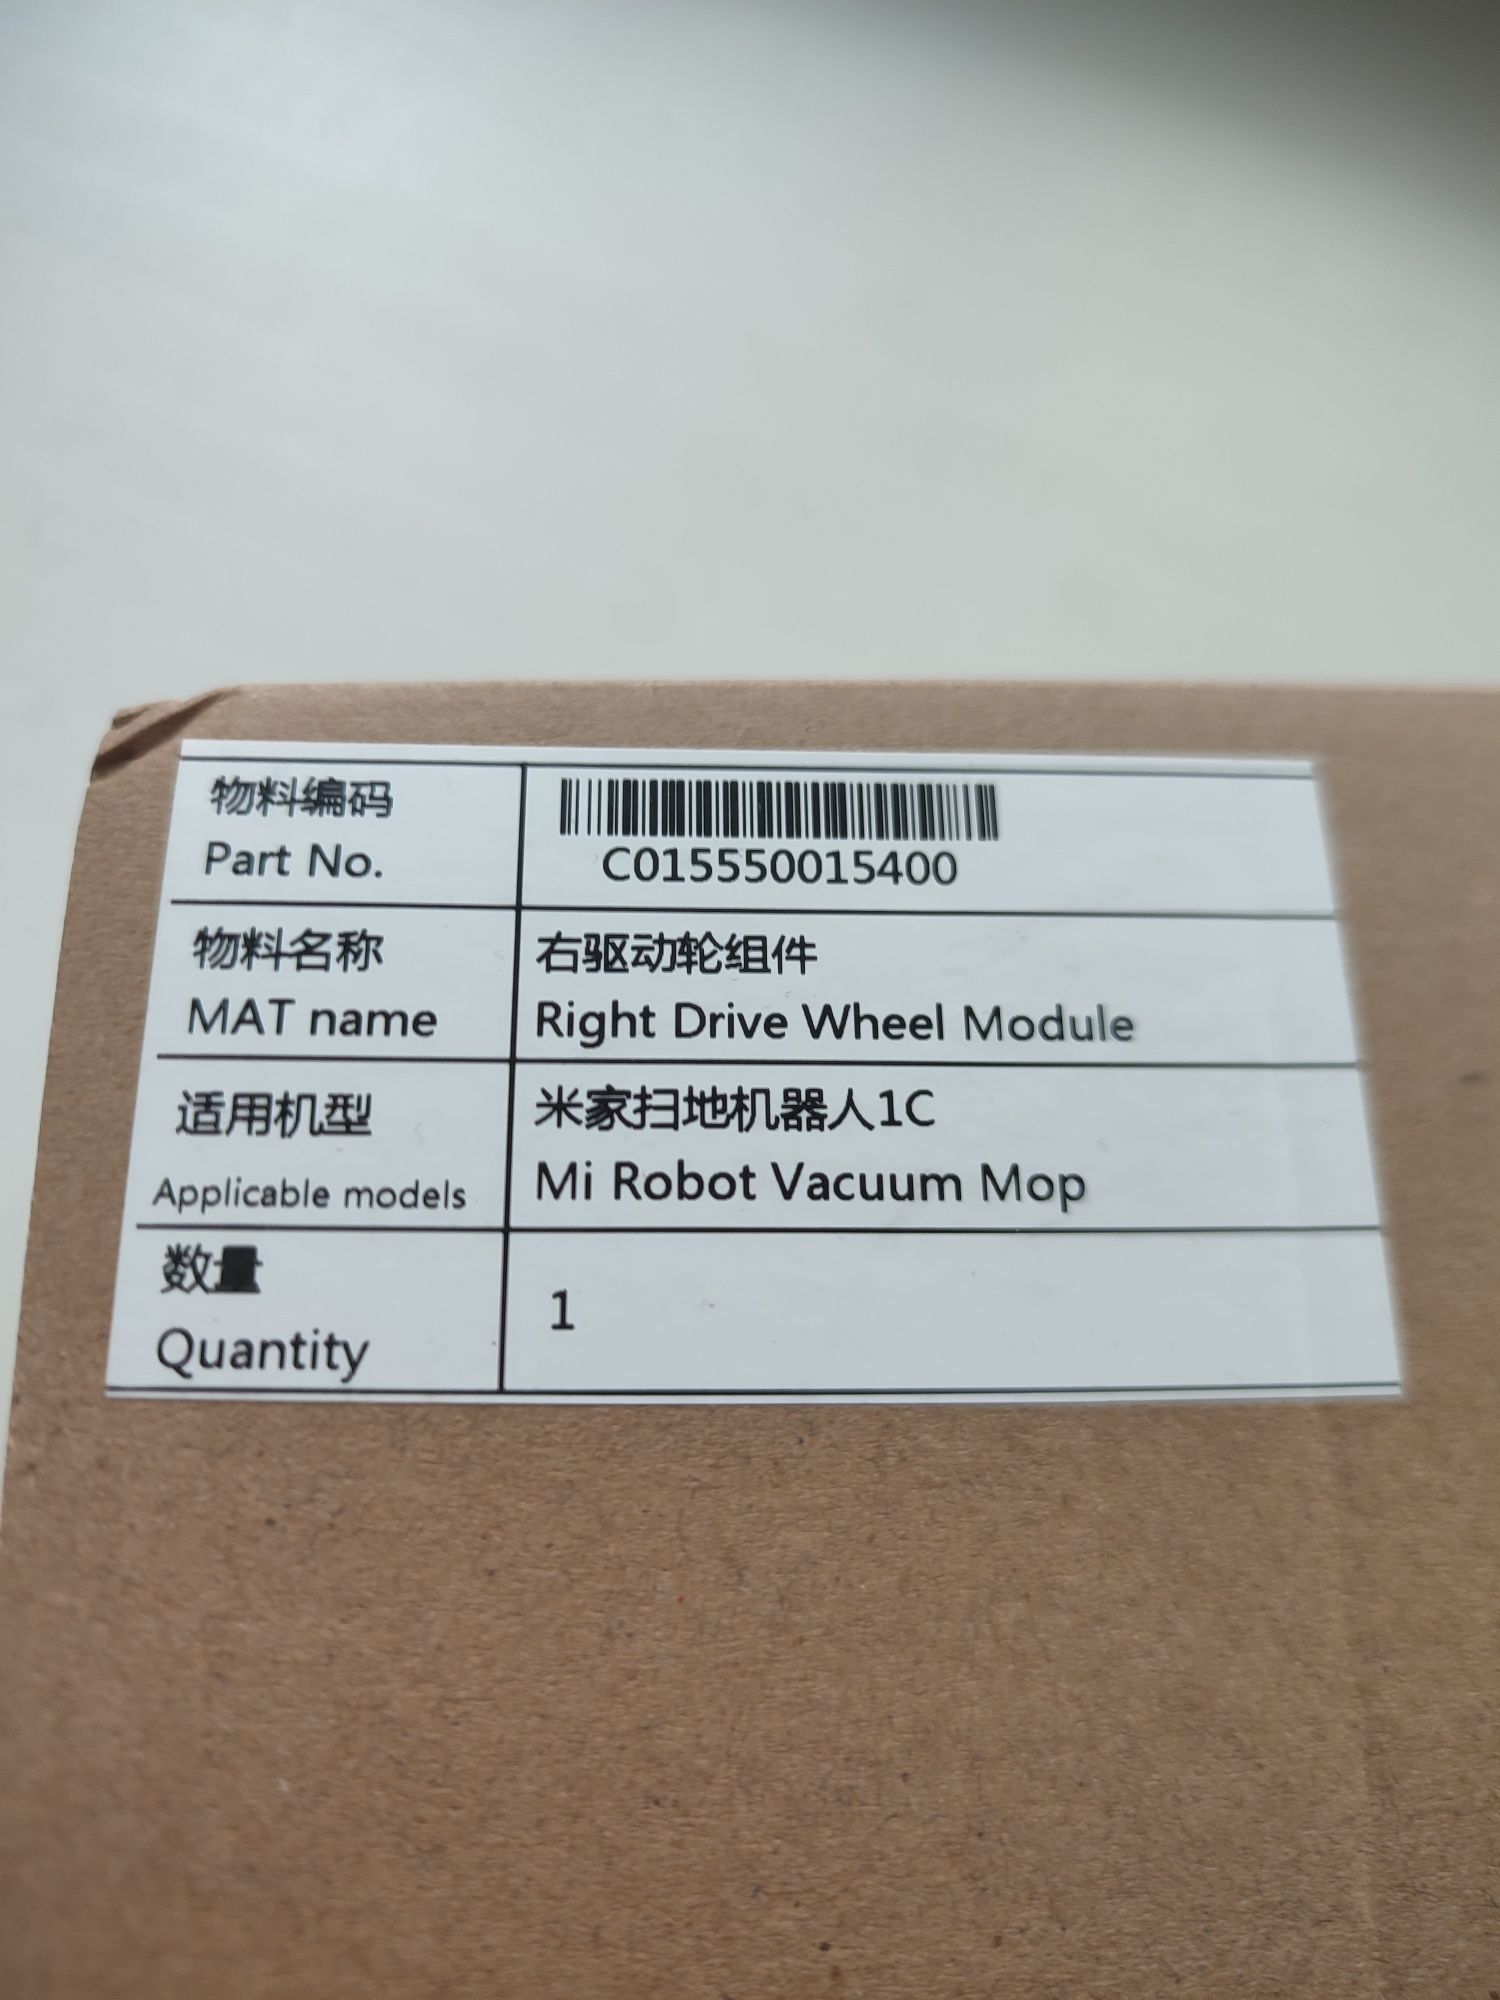 Праве та Ліве колесо Xiaomi Robot Vacuum Mop 1c
Оригінальна деталь для